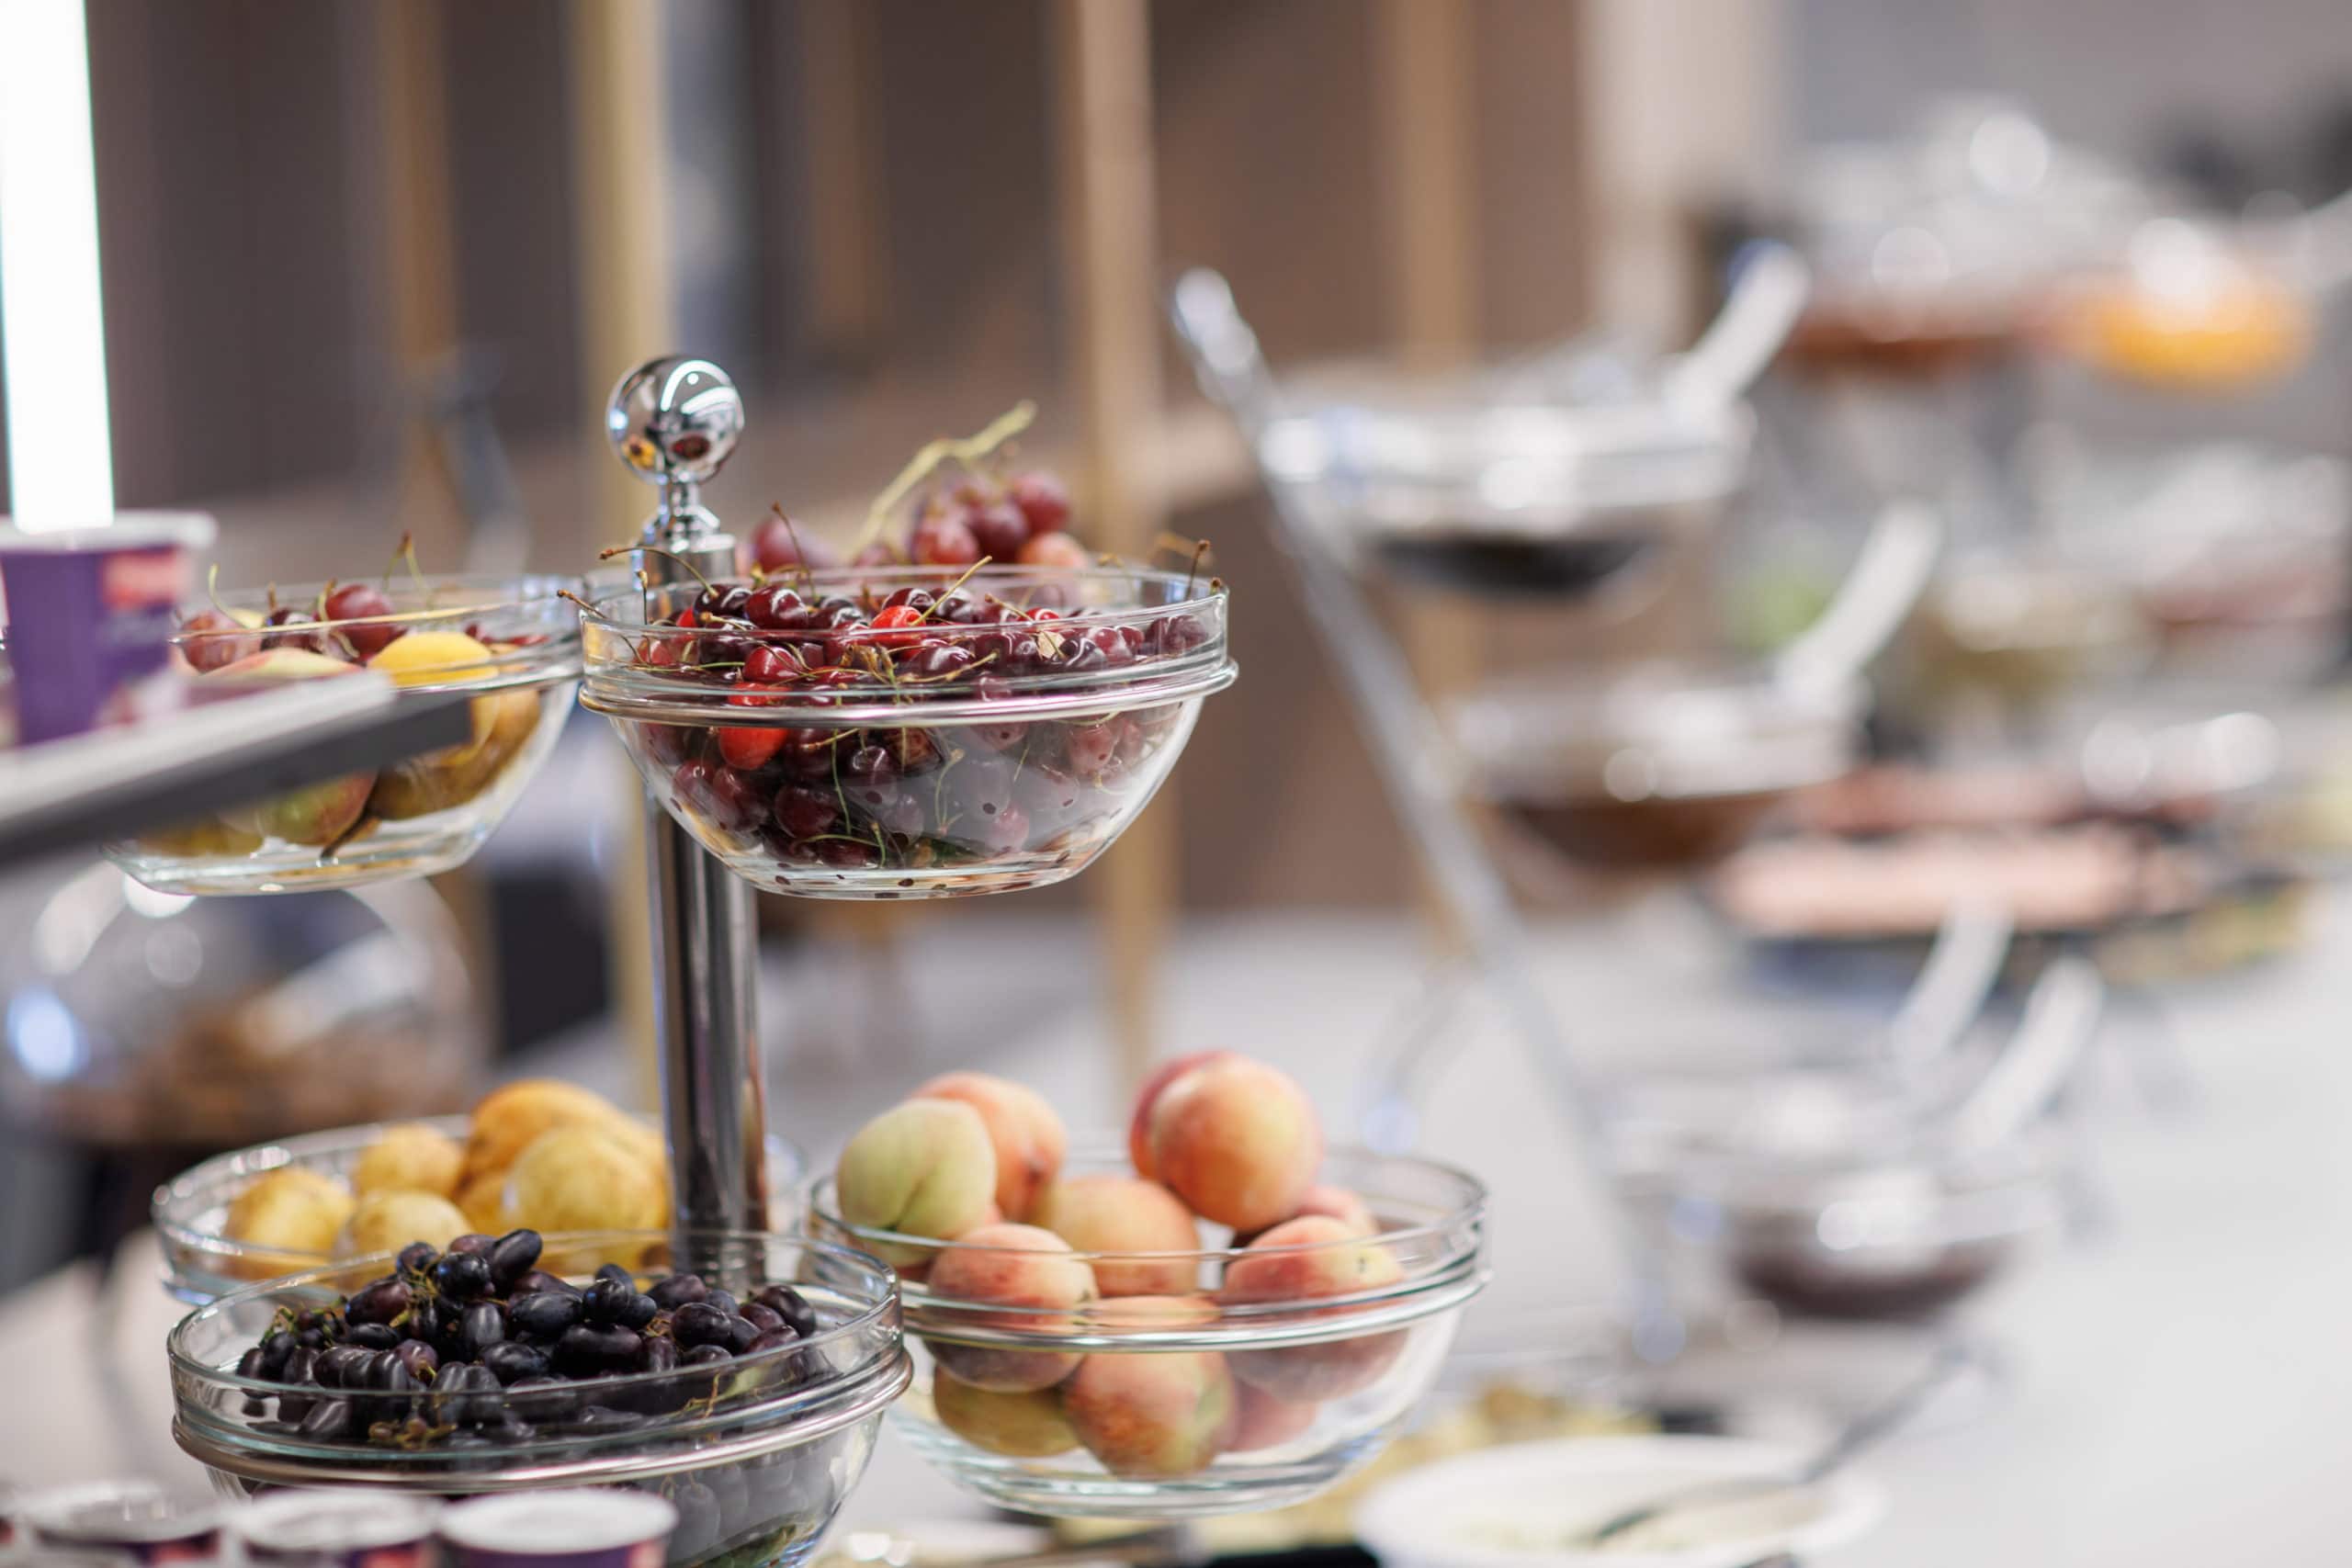 prado_luxury_hotel_breakfast_buffet_fruit_bowls